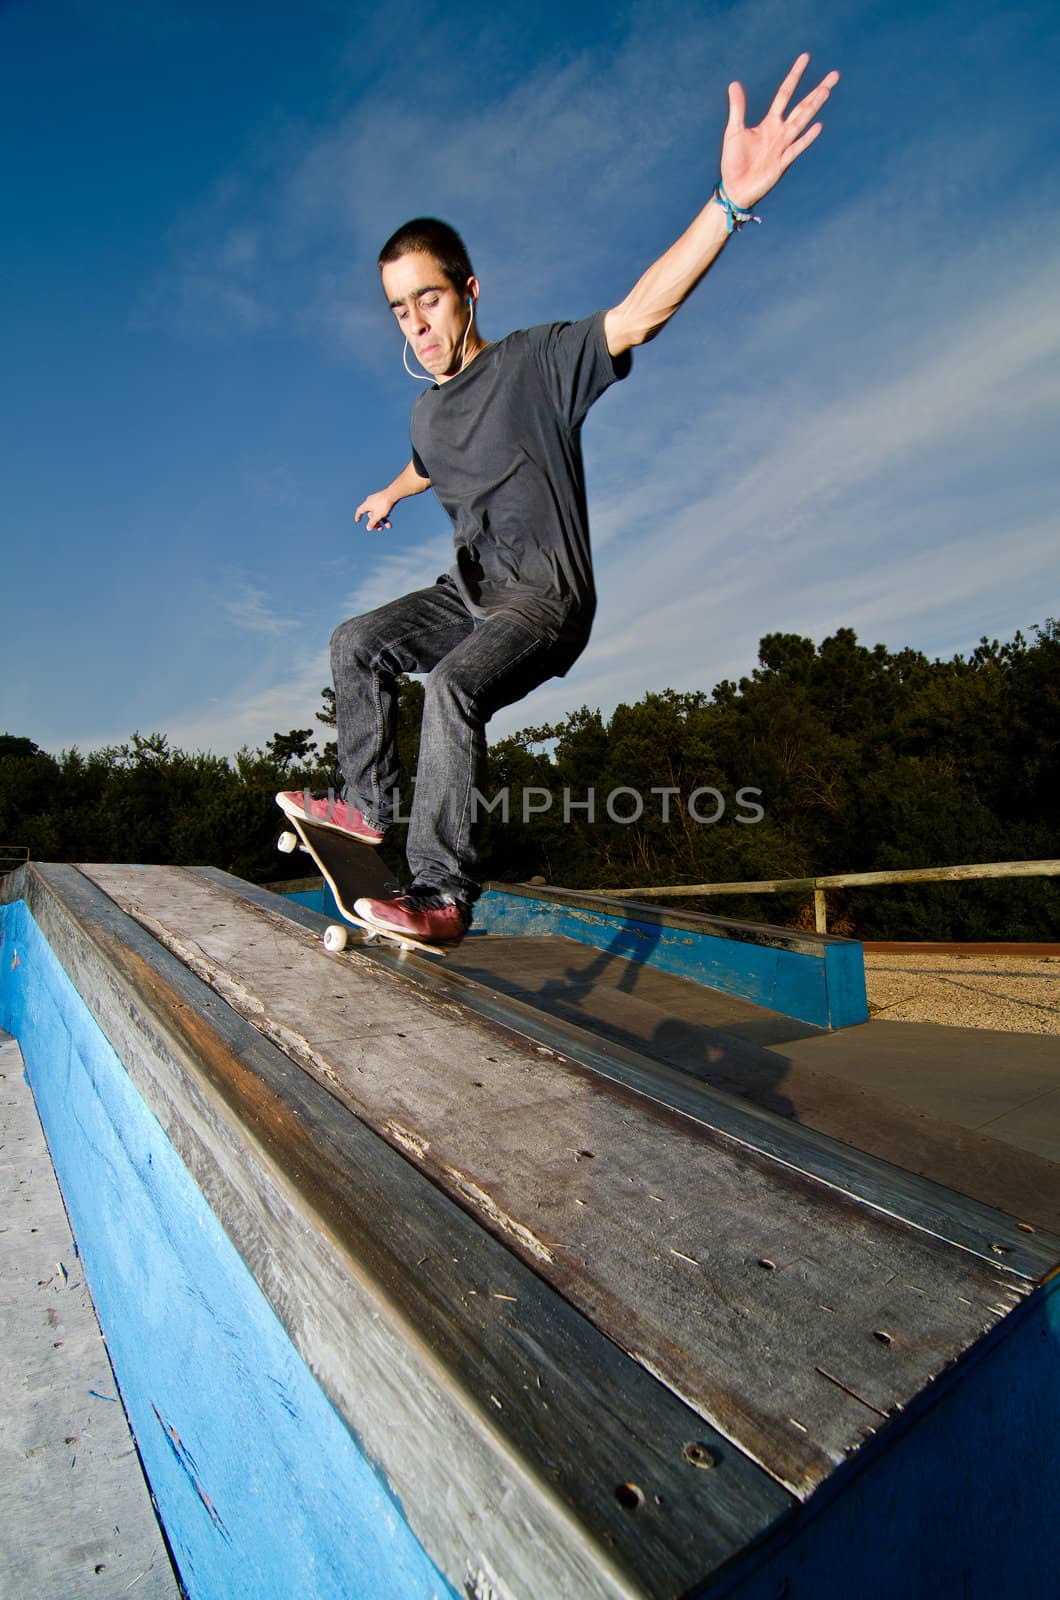 Skateboarder on a grind by homydesign